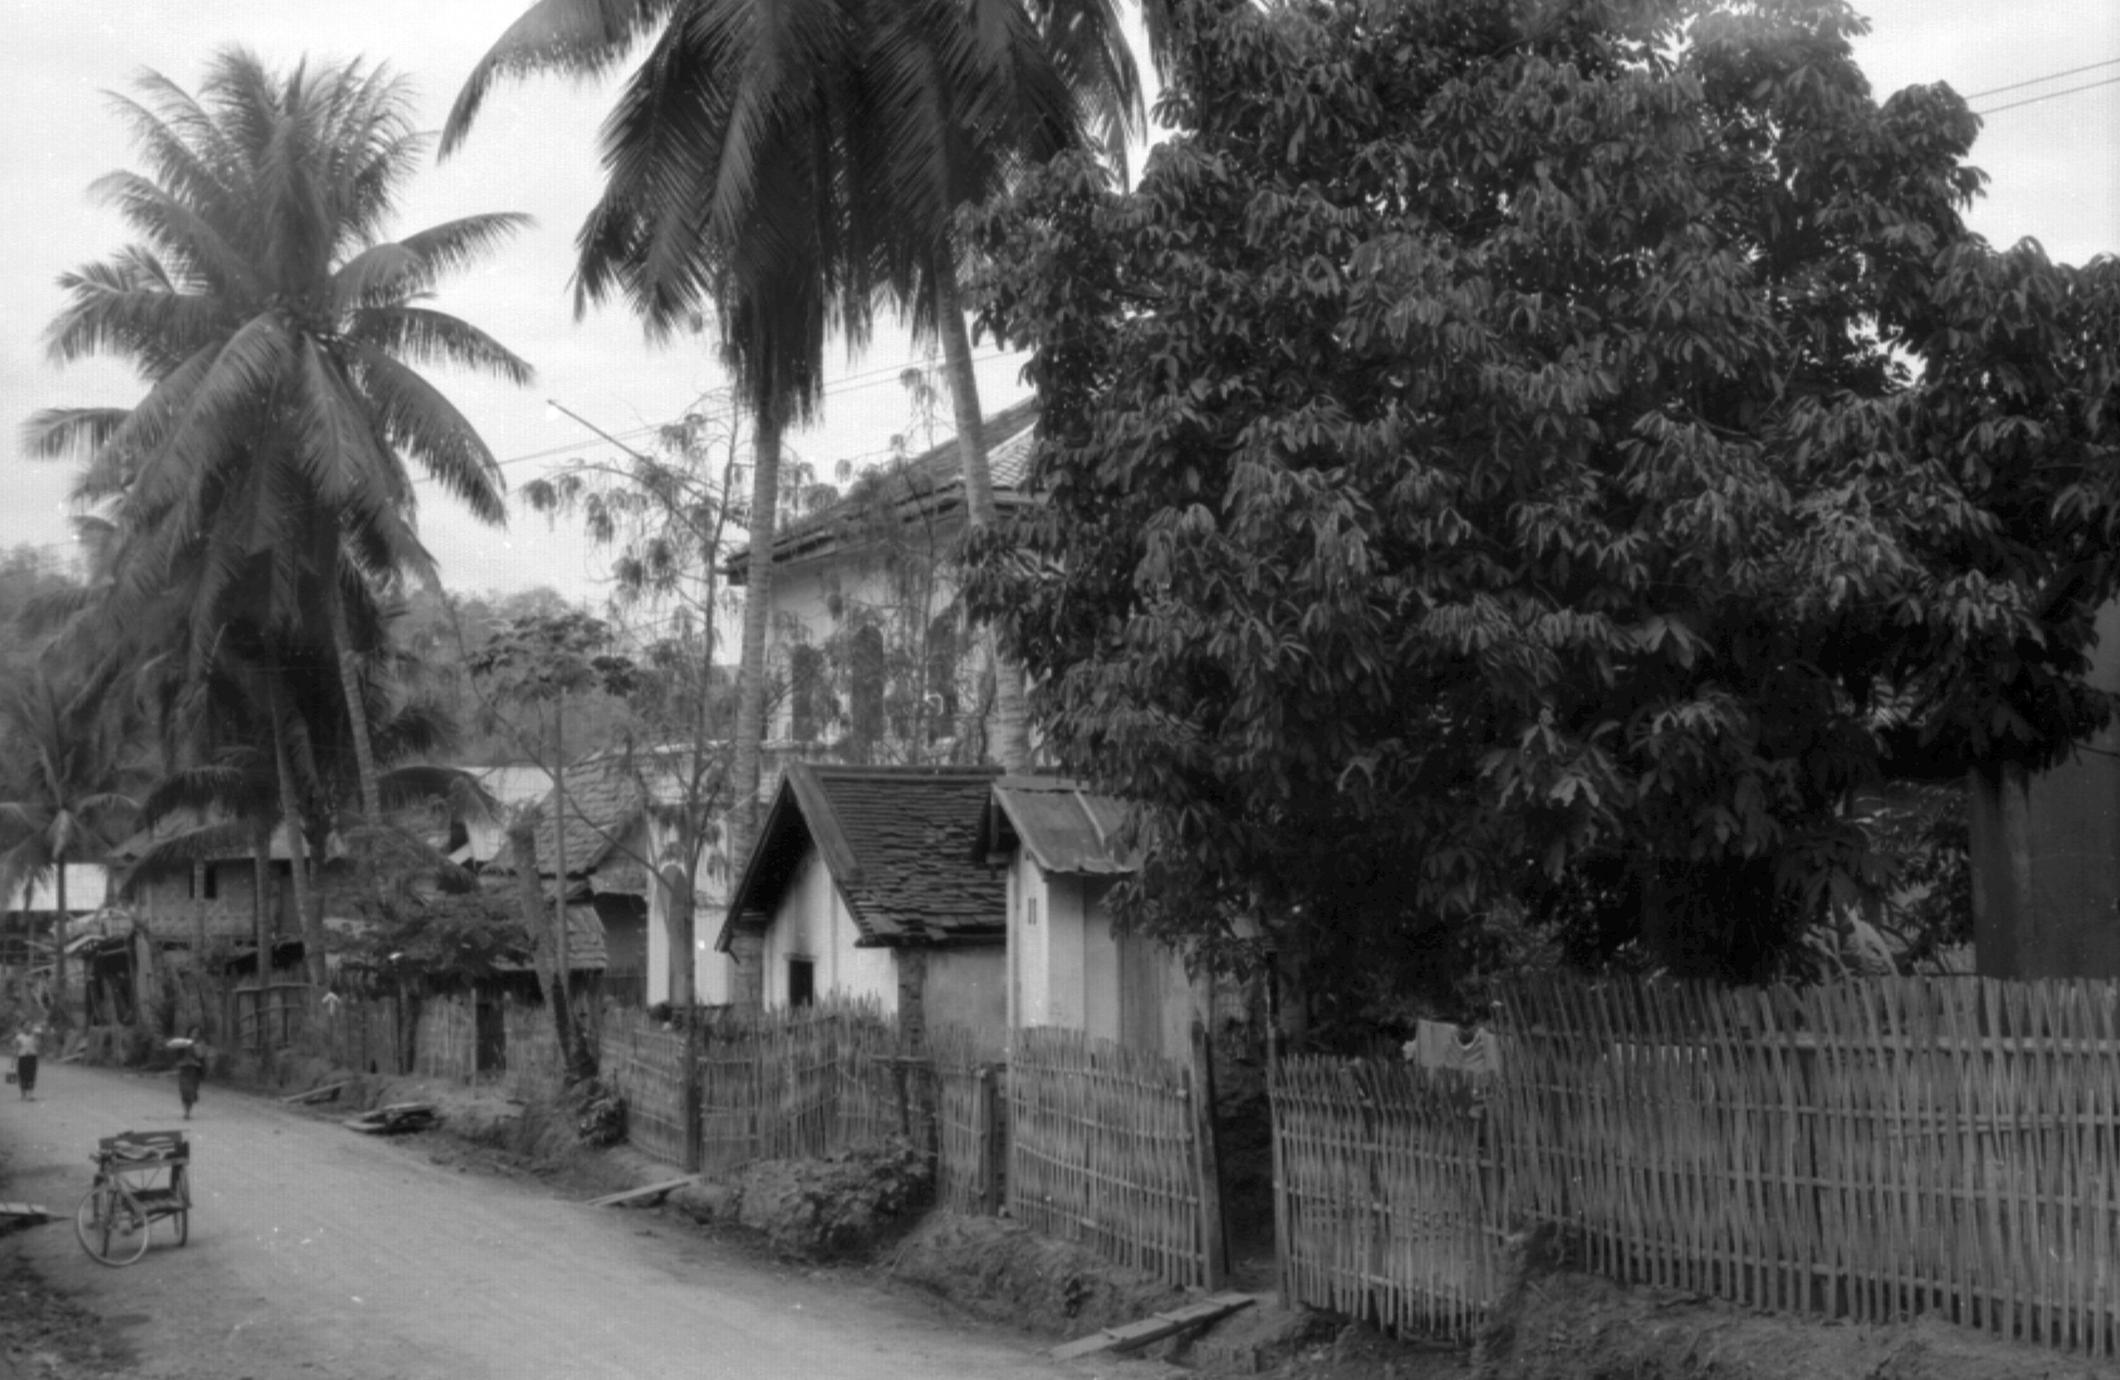 View of JMH residence on side of street, Mekong River bottom of the street